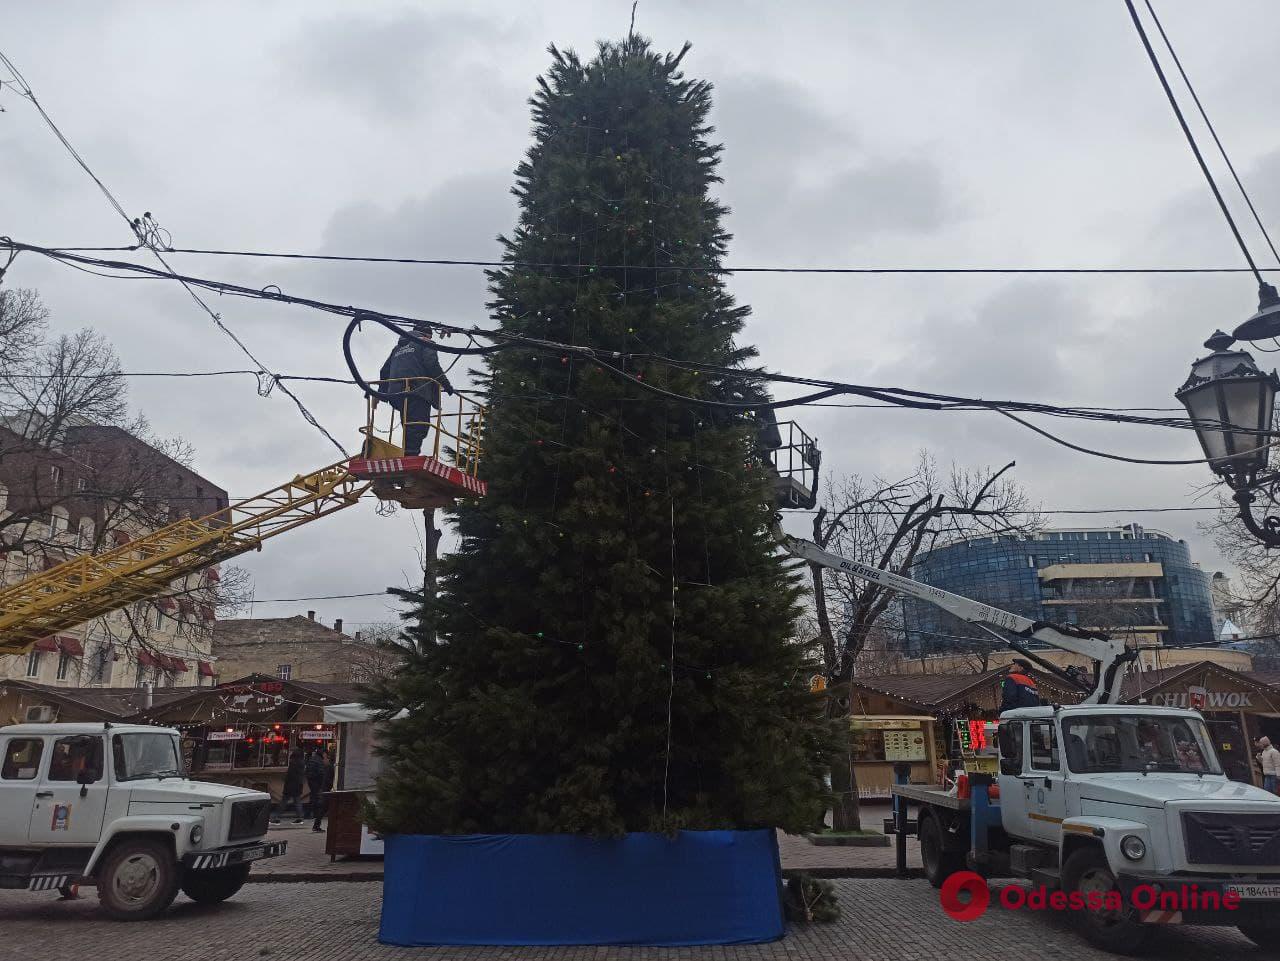 На Дерибасовской украшают новогоднюю елку, а у Дюка устанавливают карусель (фото)